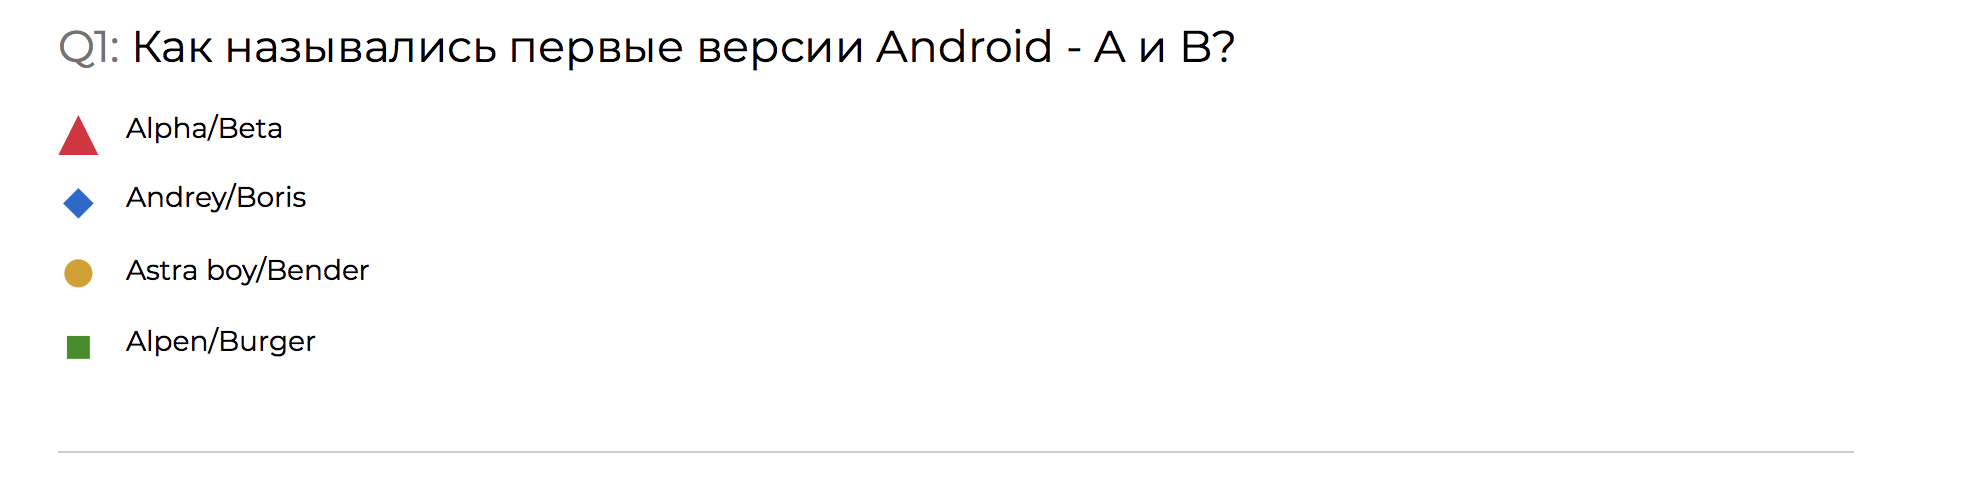 Разбор конкурса-квиза по Android со стенда HeadHunter на Mobius 2018 Moscow - 2